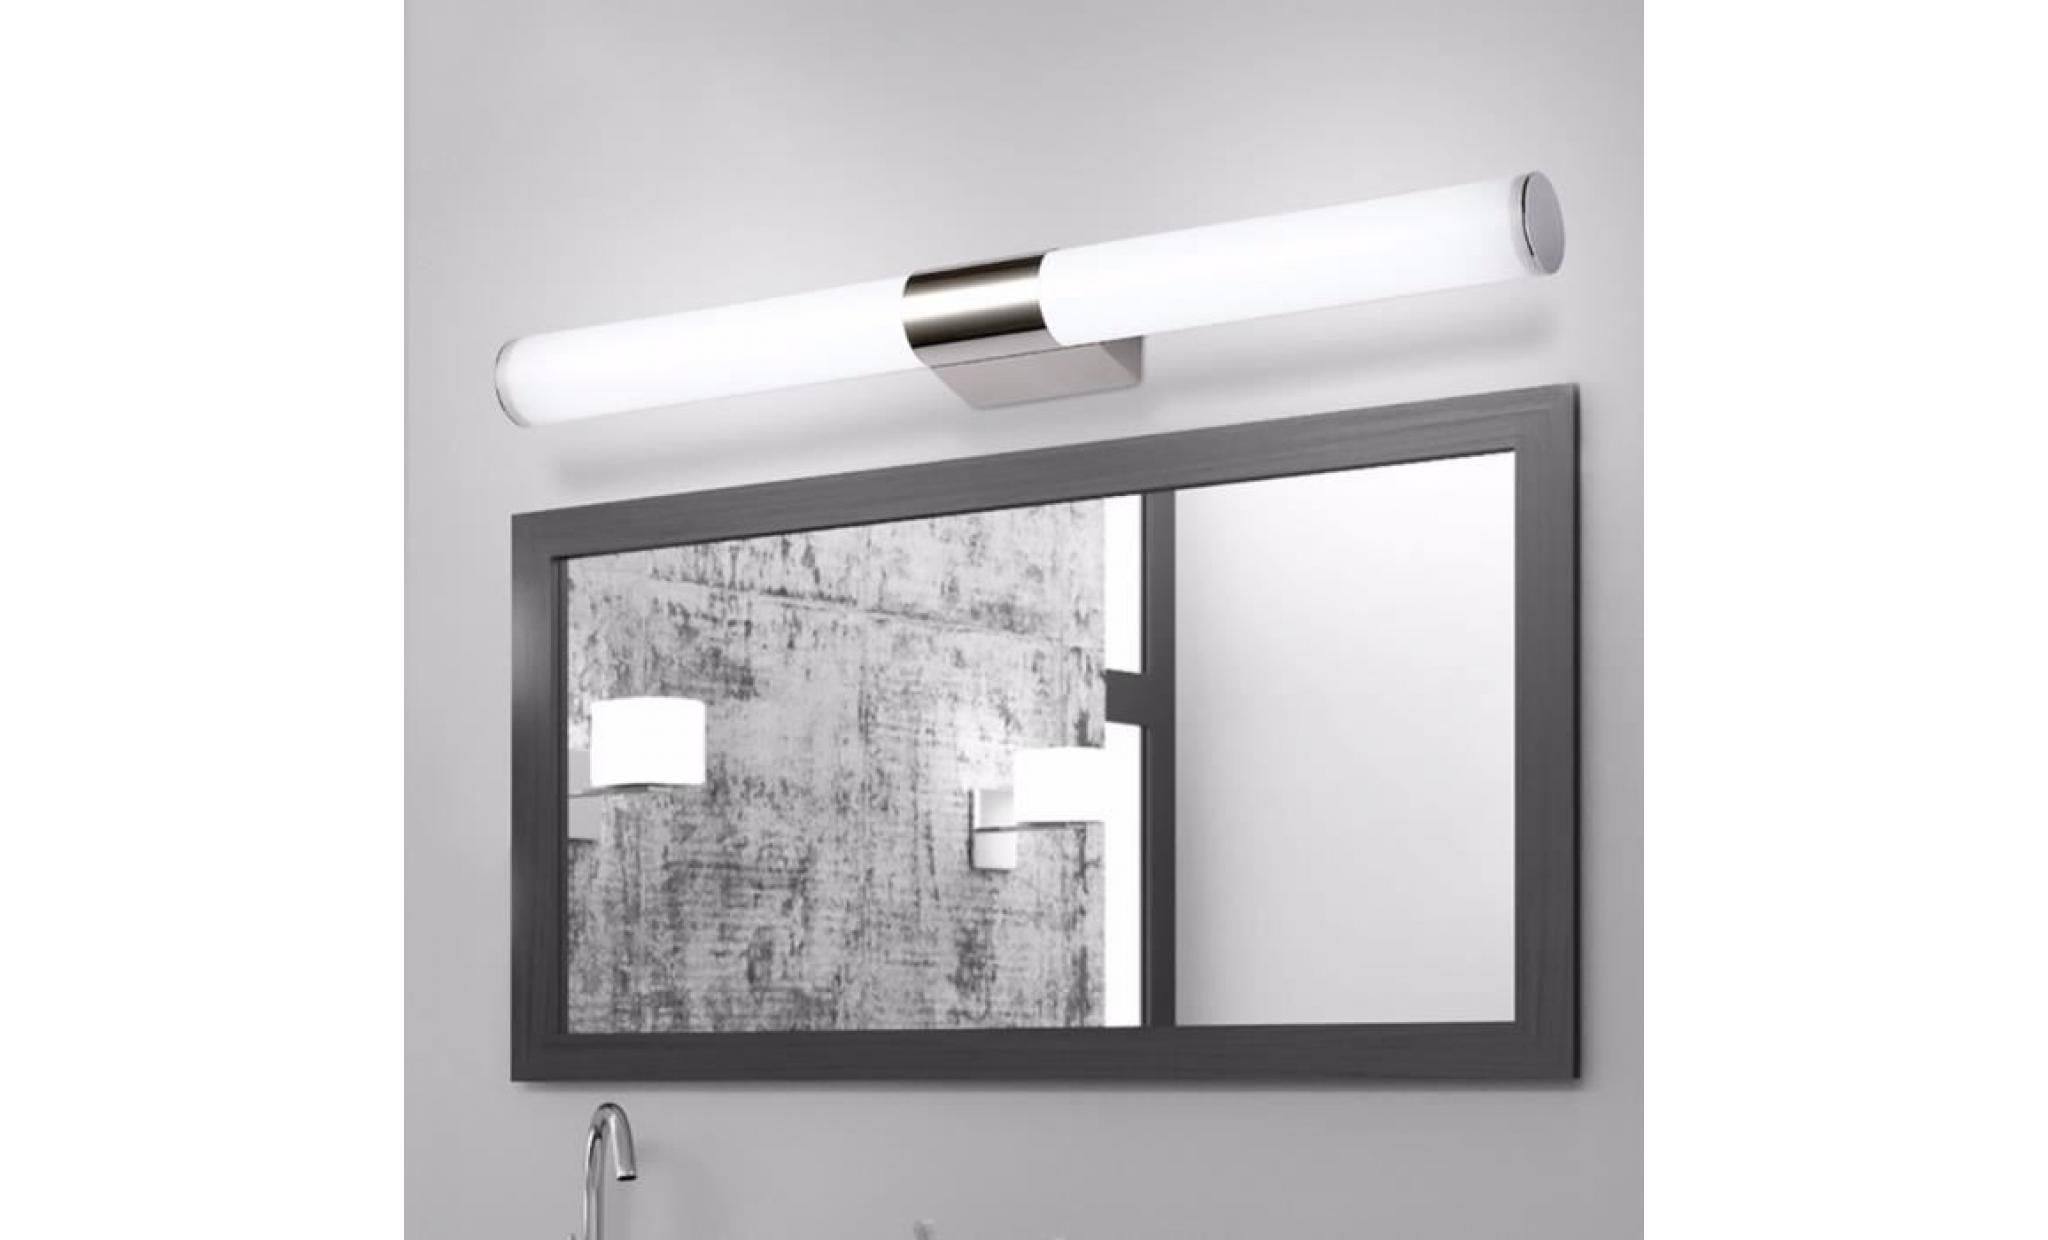 neufu 55cm 22w lampe murale etanche salle de bain led lumière blanche applique miroir intérieur